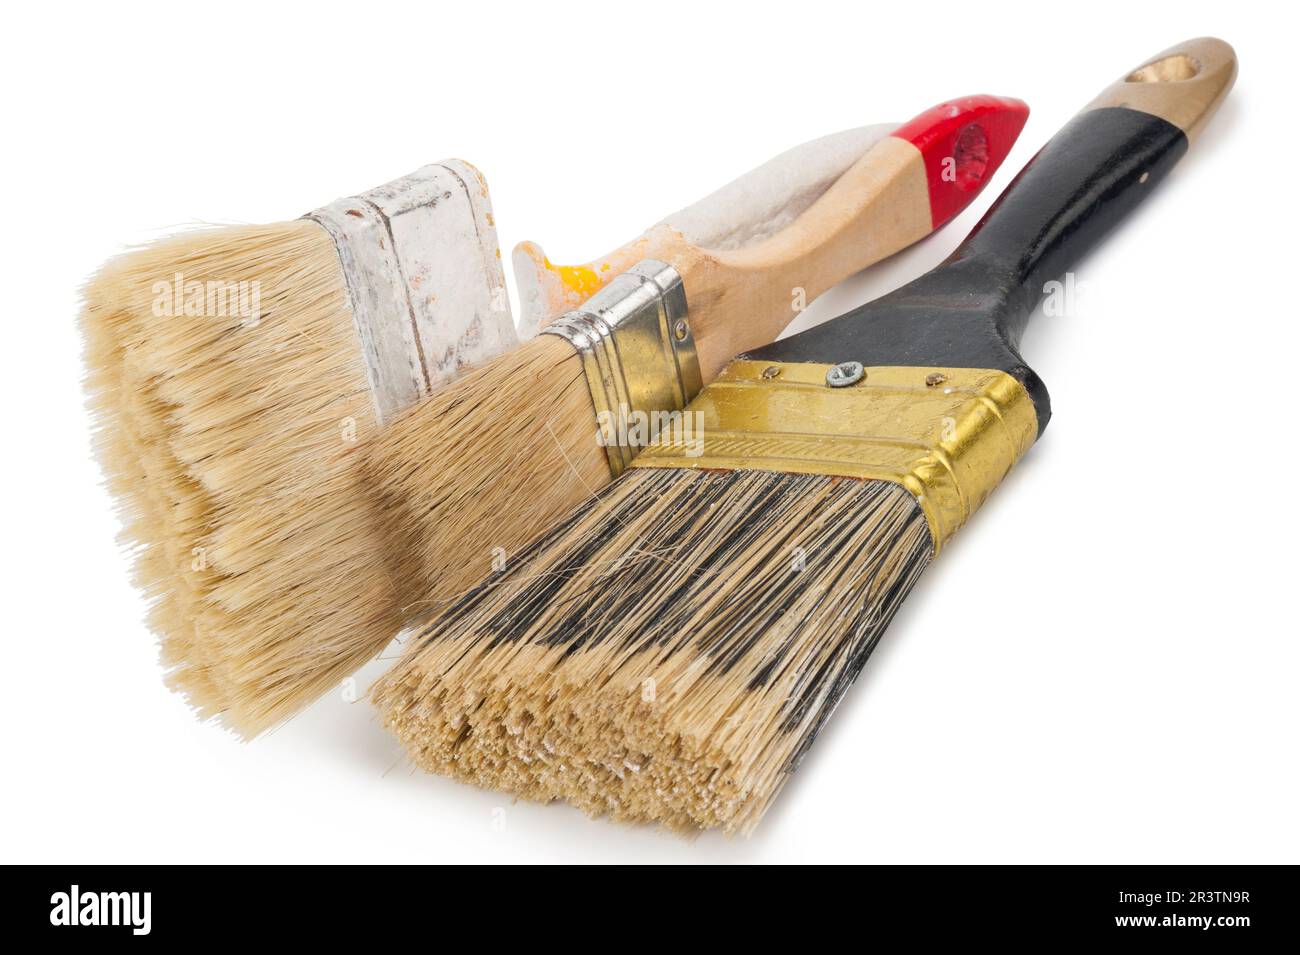 House paintbrushes Stock Photo